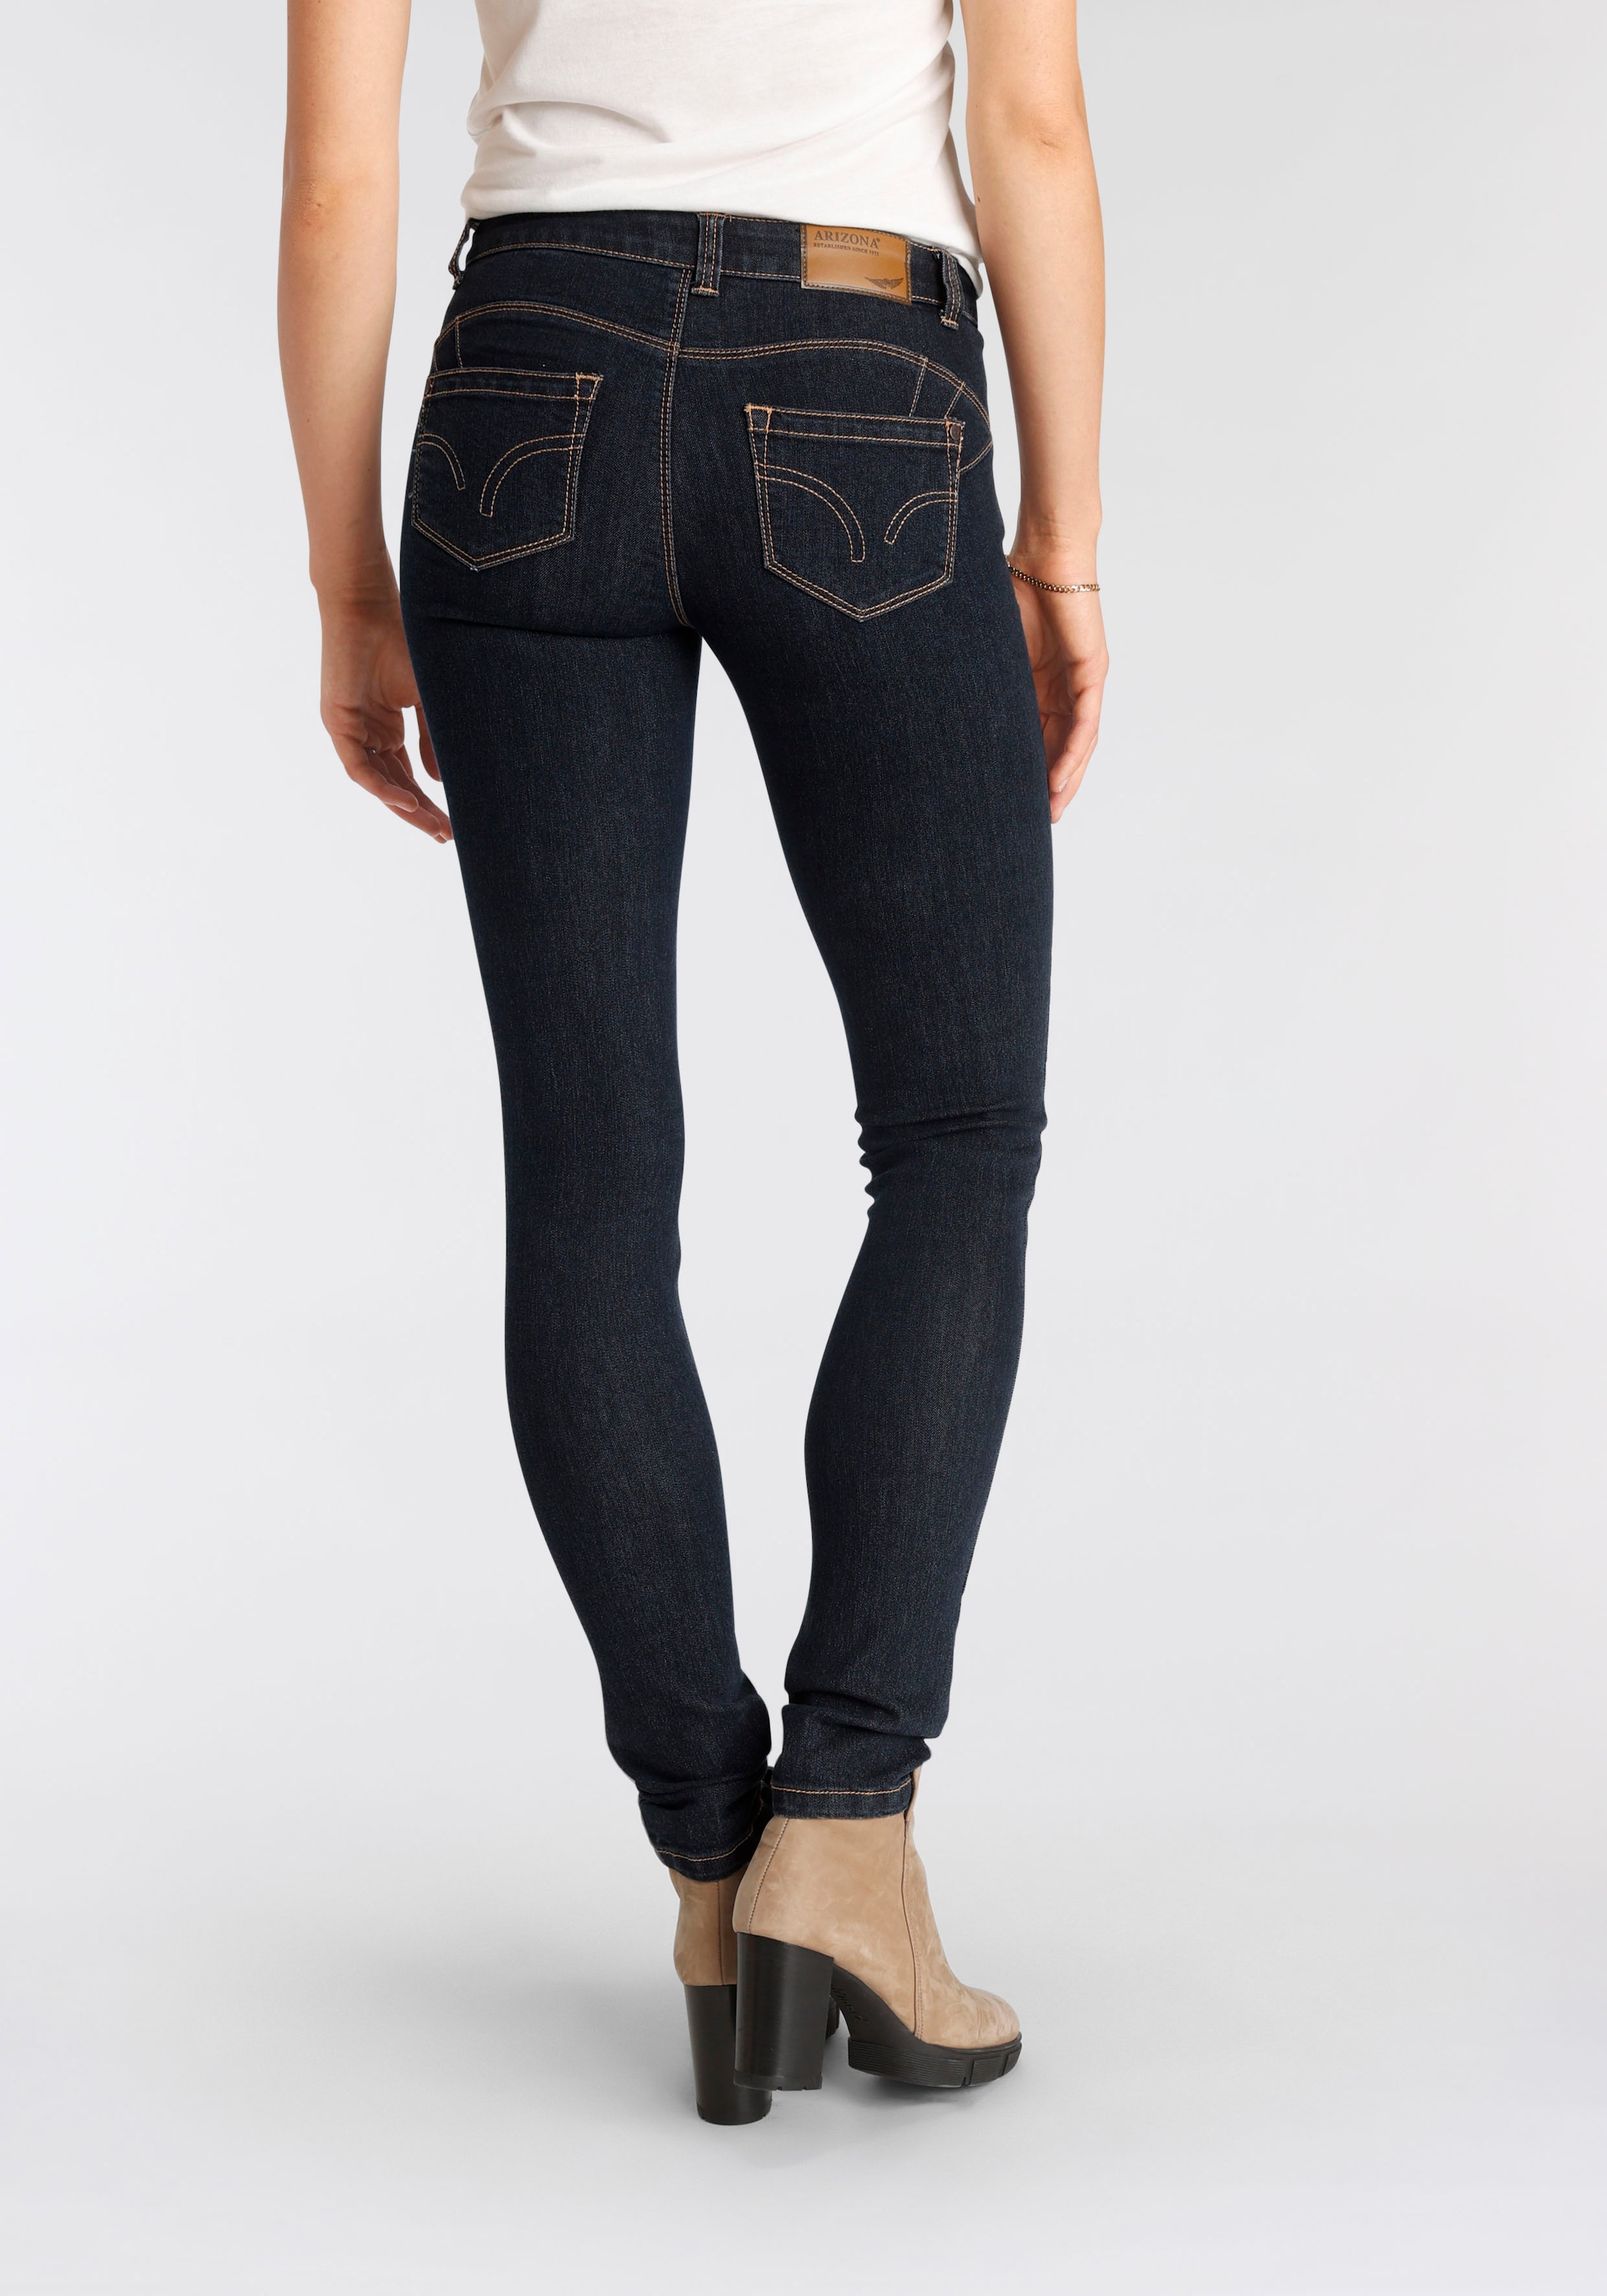 Nachhaltige Jeans - günstige Damenmode online bestellen